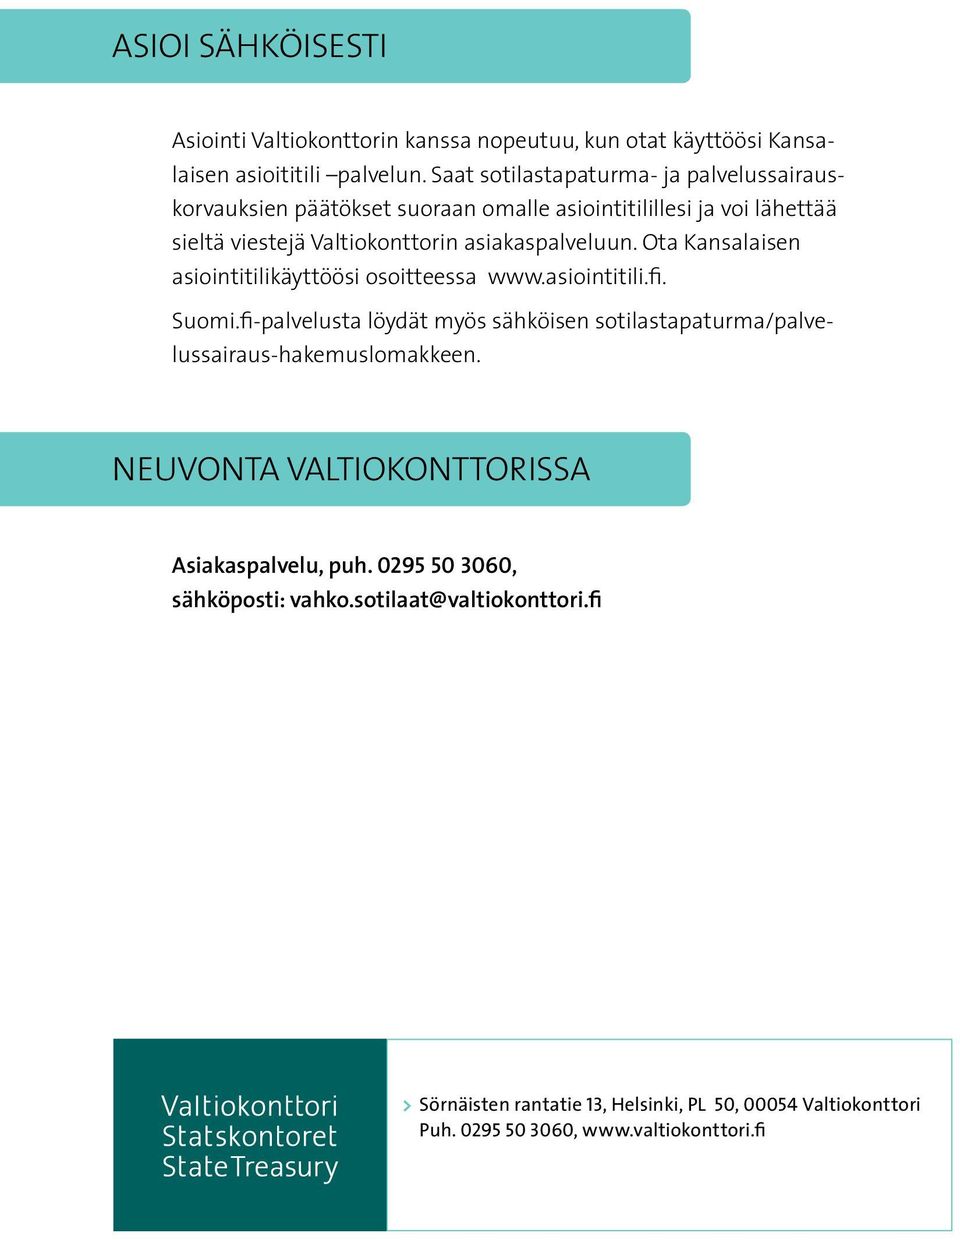 Ota Kansalaisen asiointitilikäyttöösi osoitteessa www.asiointitili.fi. Suomi.fi-palvelusta löydät myös sähköisen sotilastapaturma/palvelussairaus-hakemuslomakkeen.